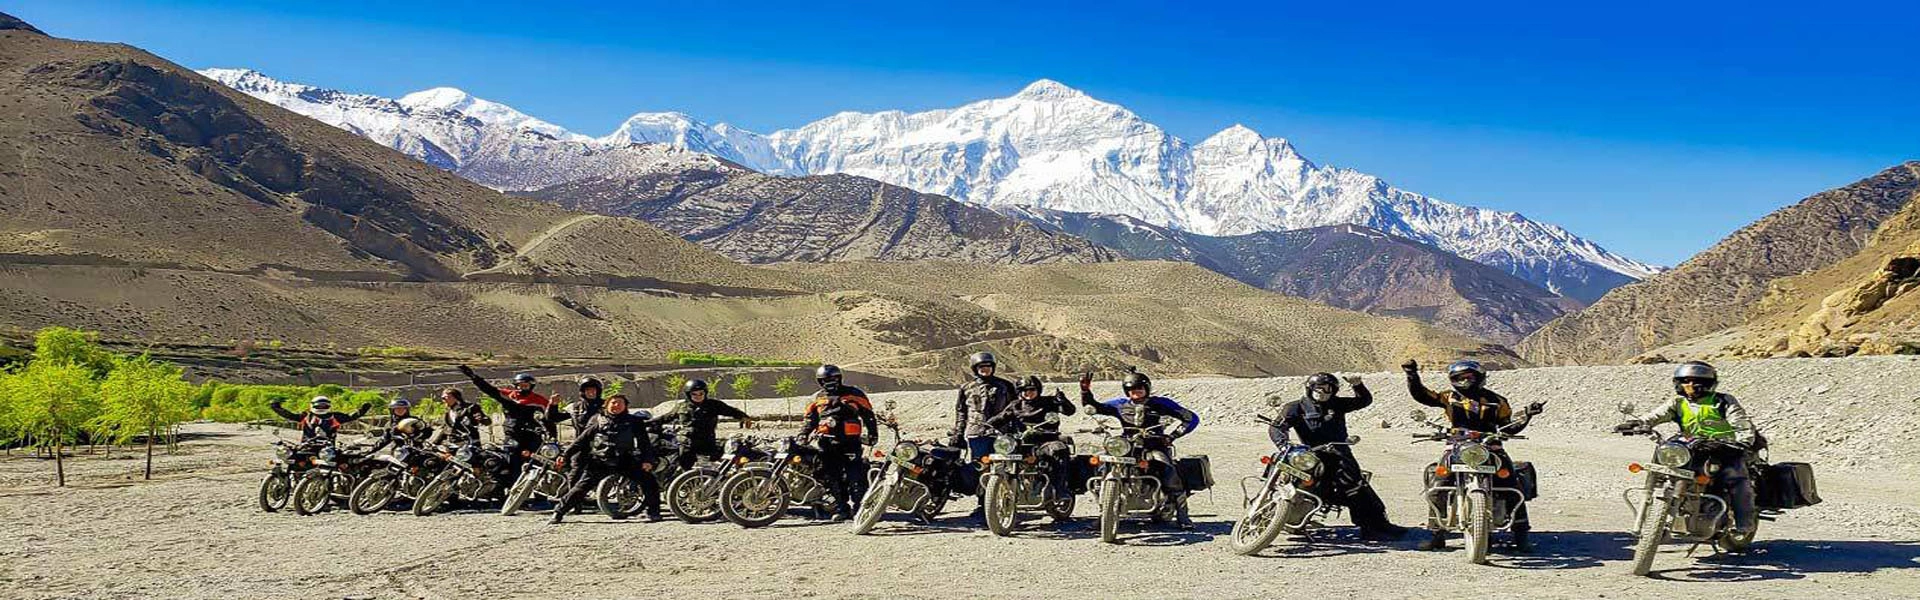 Nepal Motor Bike Tour Package: Best Motorcycle Route in Nepal